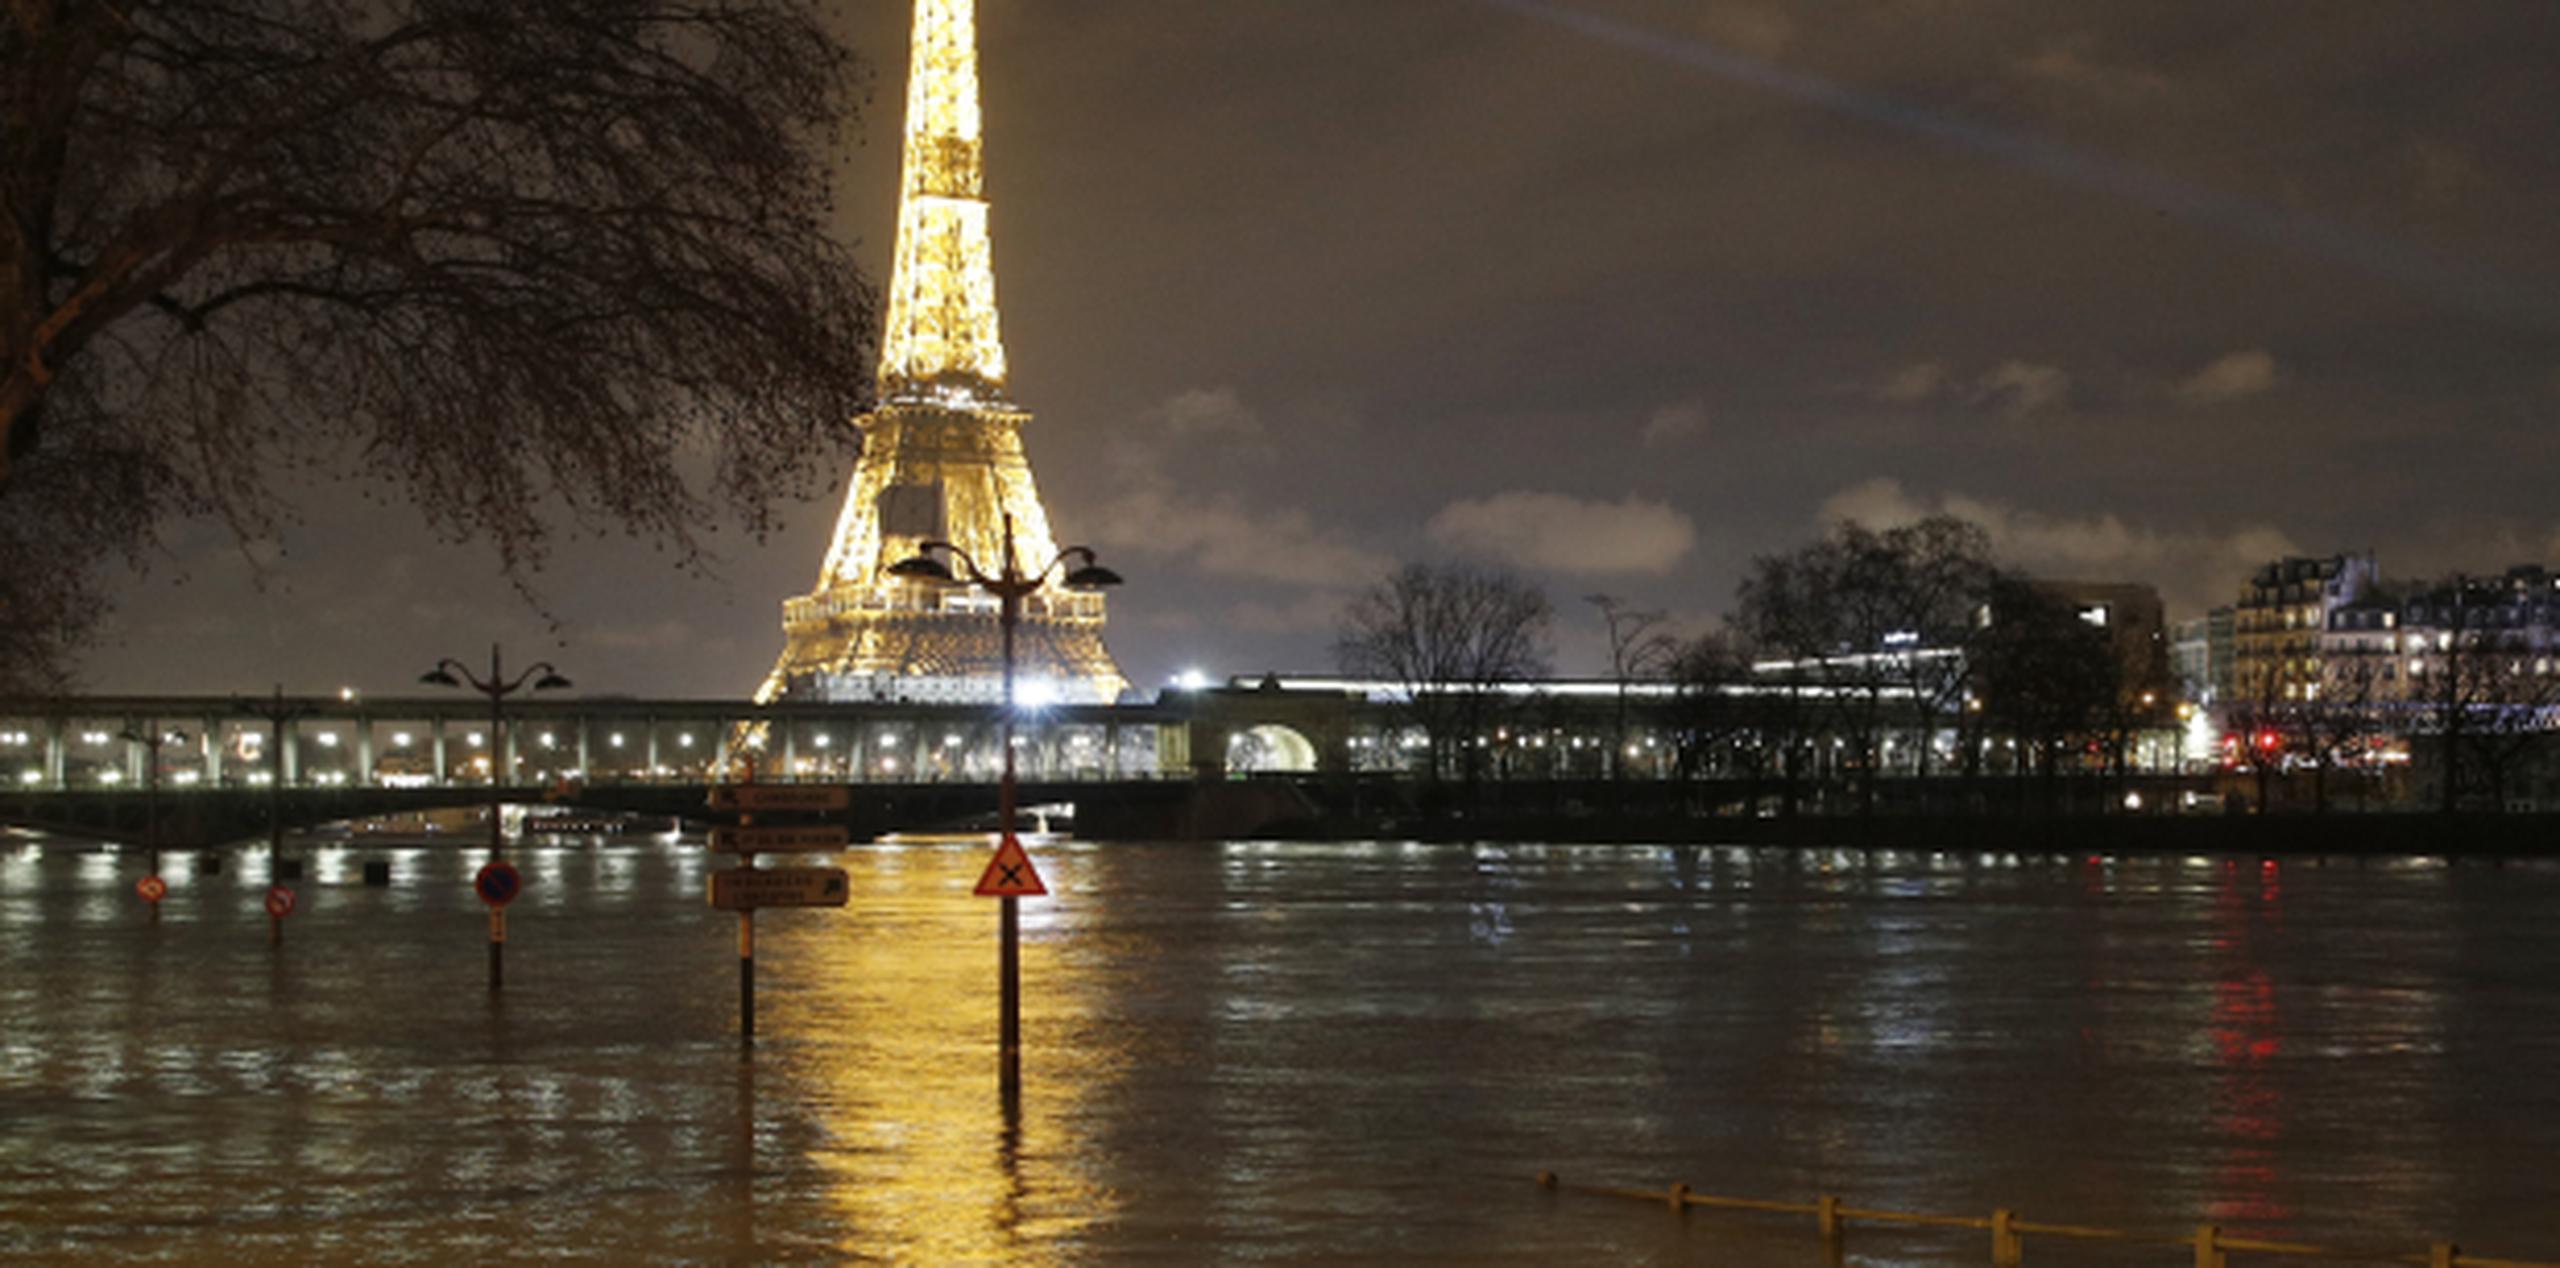 La Torre Eiffel brilla como de costumbre pero su reflejo se queda esta vez en calles inundadas como esta en París, donde se puede observar los focos tapados en parte por el agua. (AP)